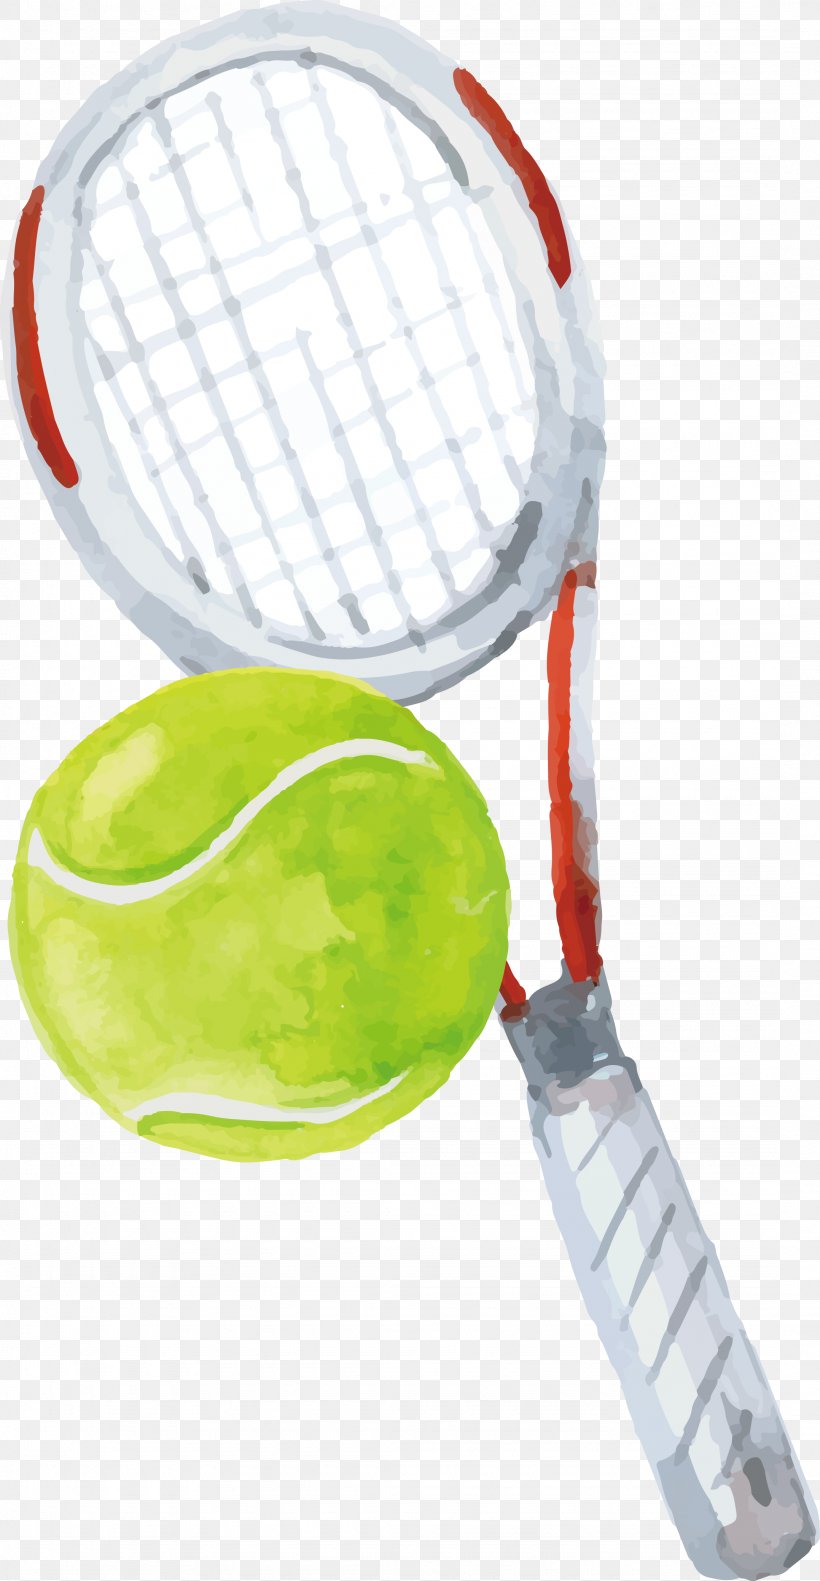 Strings Rakieta Tenisowa Tennis, PNG, 2155x4155px, Strings, Ball Game, Racket, Rackets, Rakieta Tenisowa Download Free